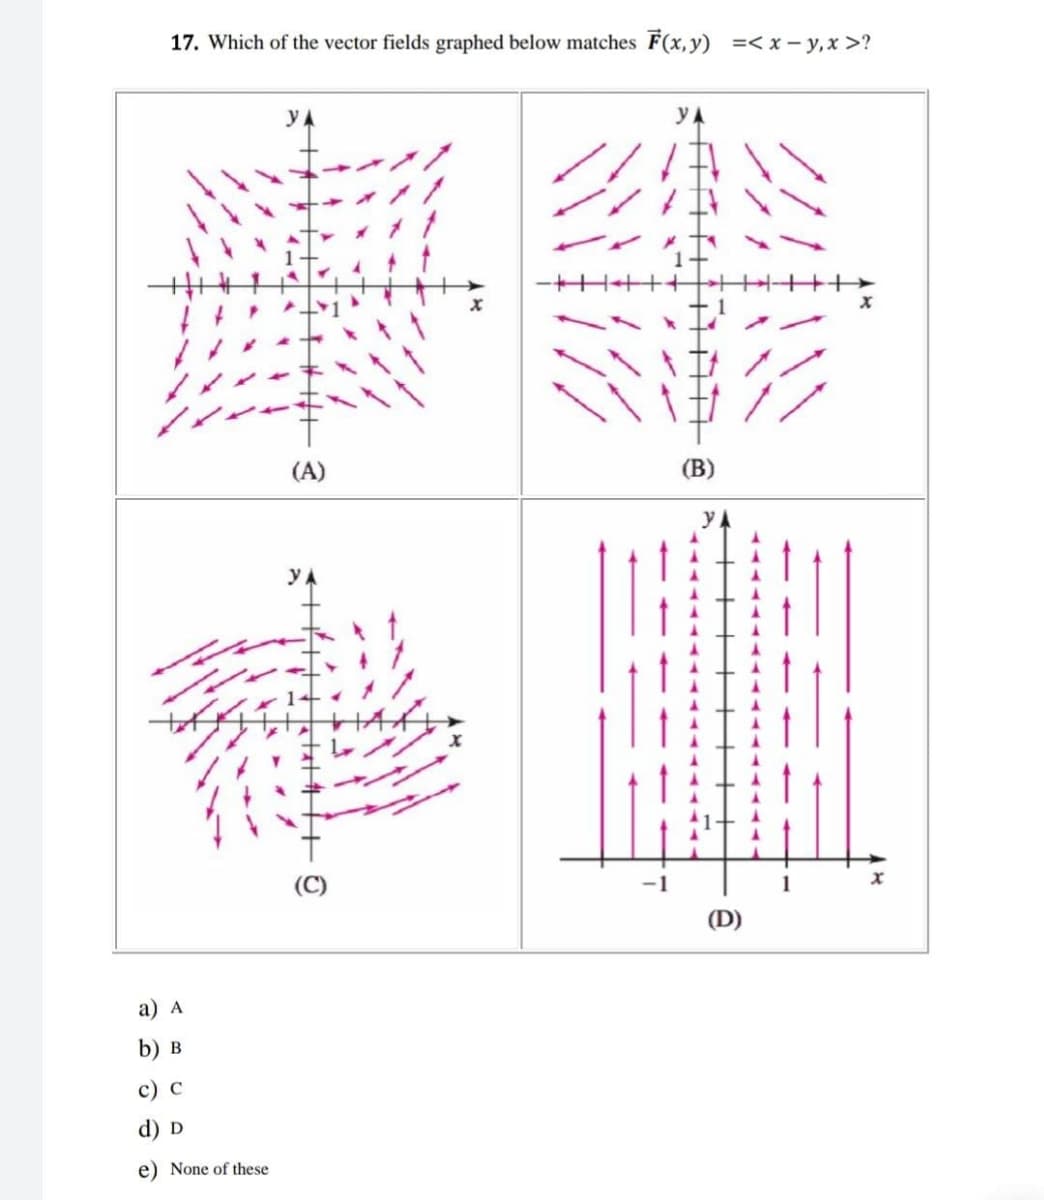 17. Which of the vector fields graphed below matches F(x, y) =<x-y₁x>?
a) A
b) B
c) C
d) D
e) None of these
YA
(A)
YA
O
NIKK
-1
YA
(B)
YA
(D)
1